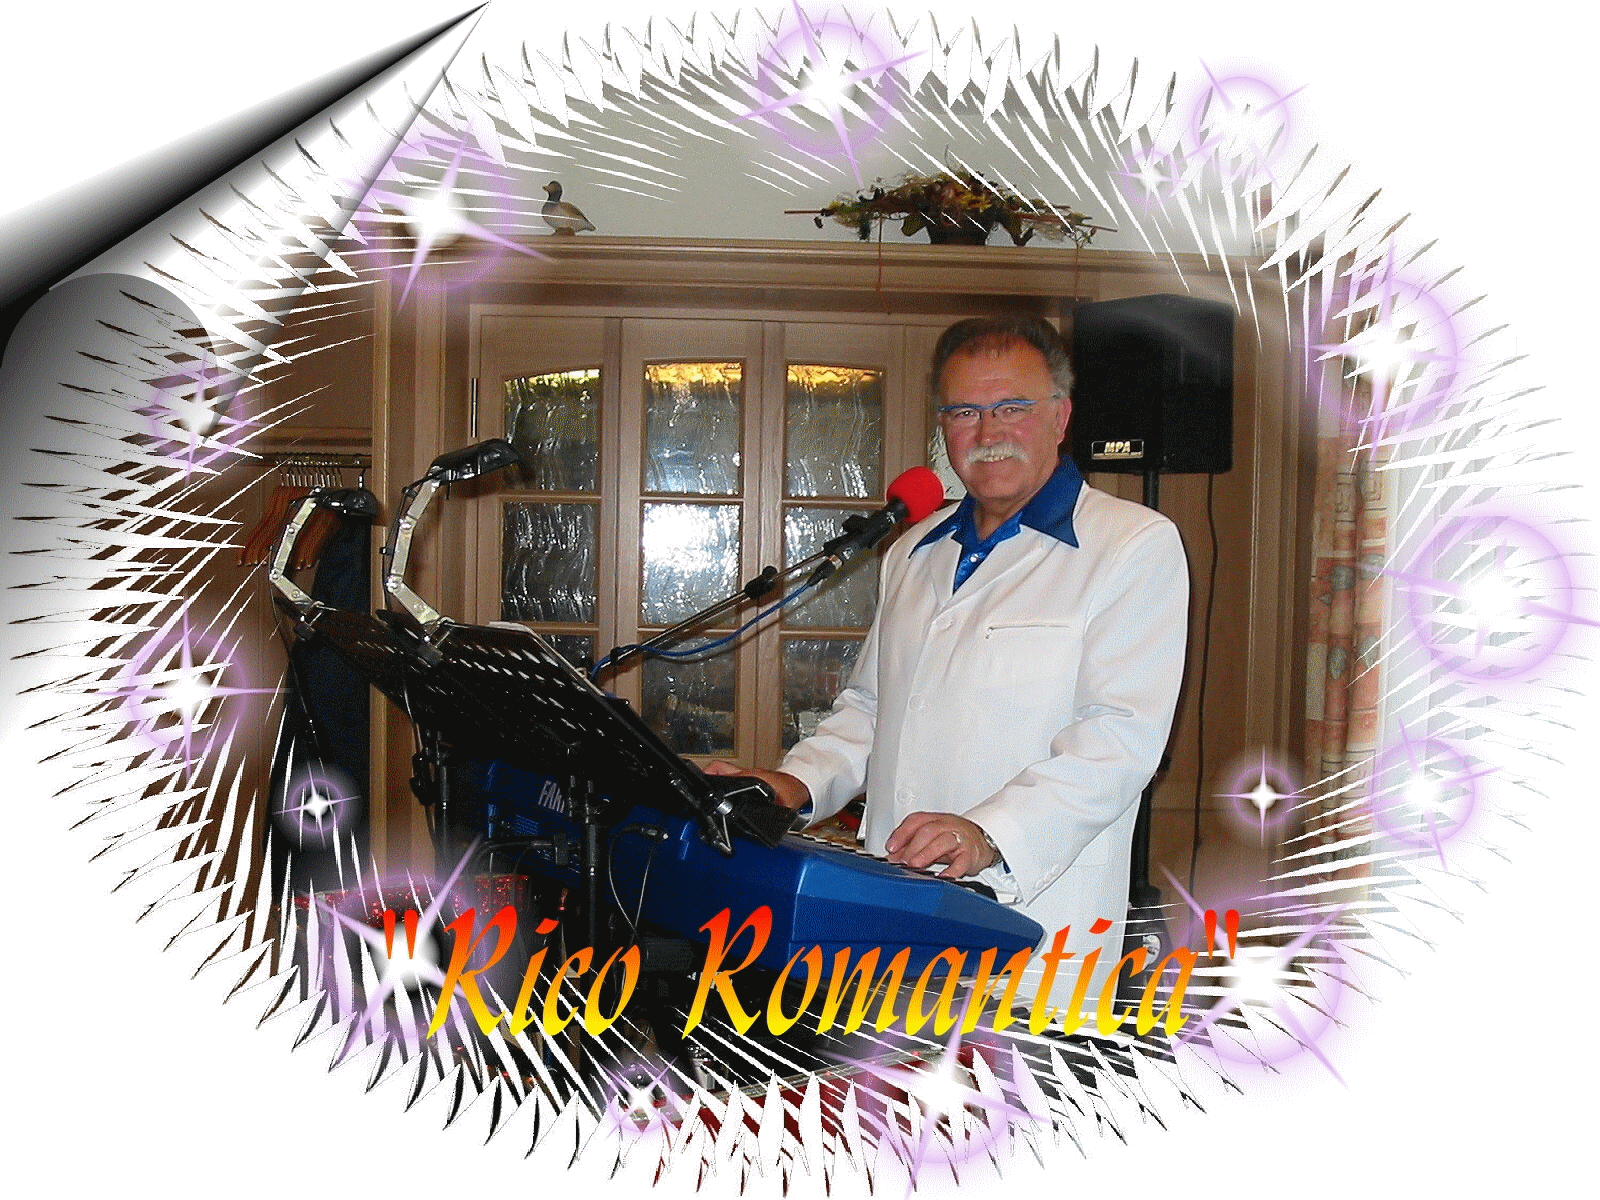 Rico Romantica - Der singende Saarländer